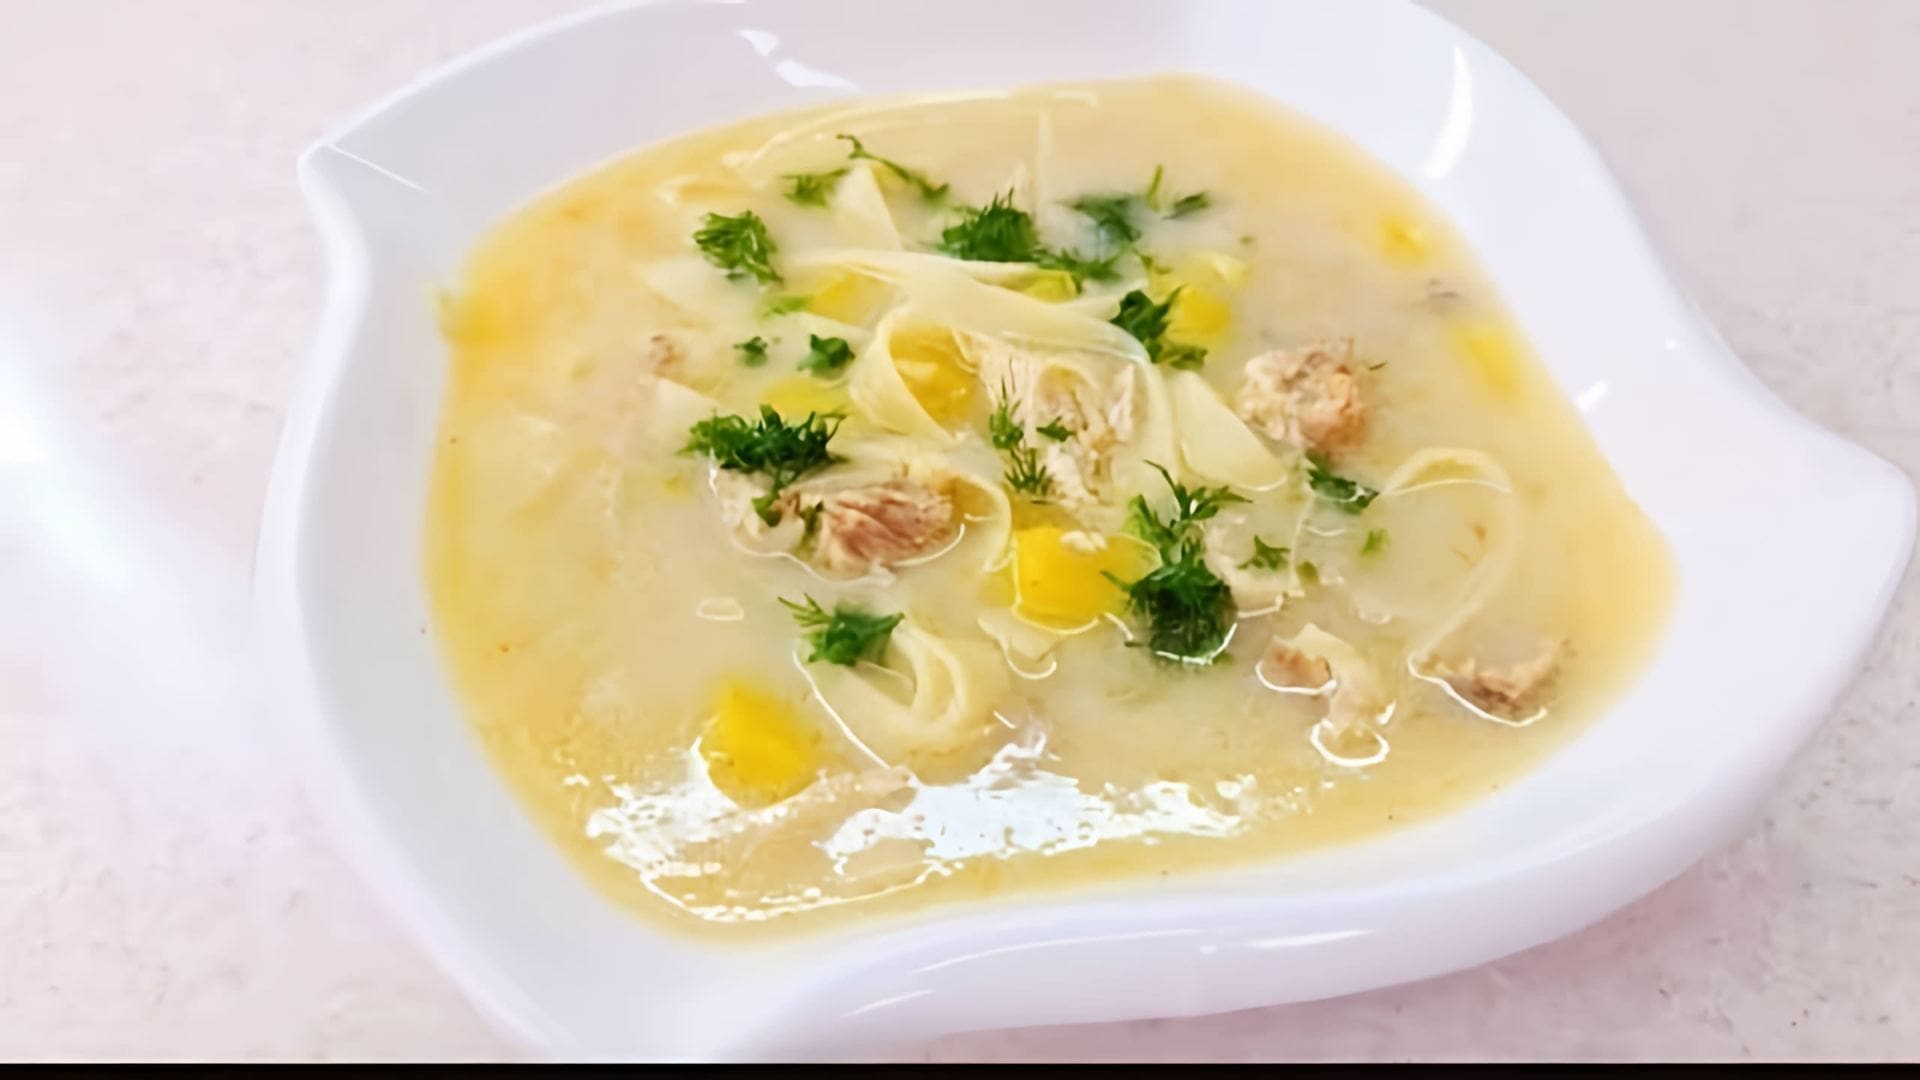 В этом видео-ролике будут представлены различные рецепты легких супов, включая куриный суп, болгарский суп, пилешка супа, бульон и детский суп